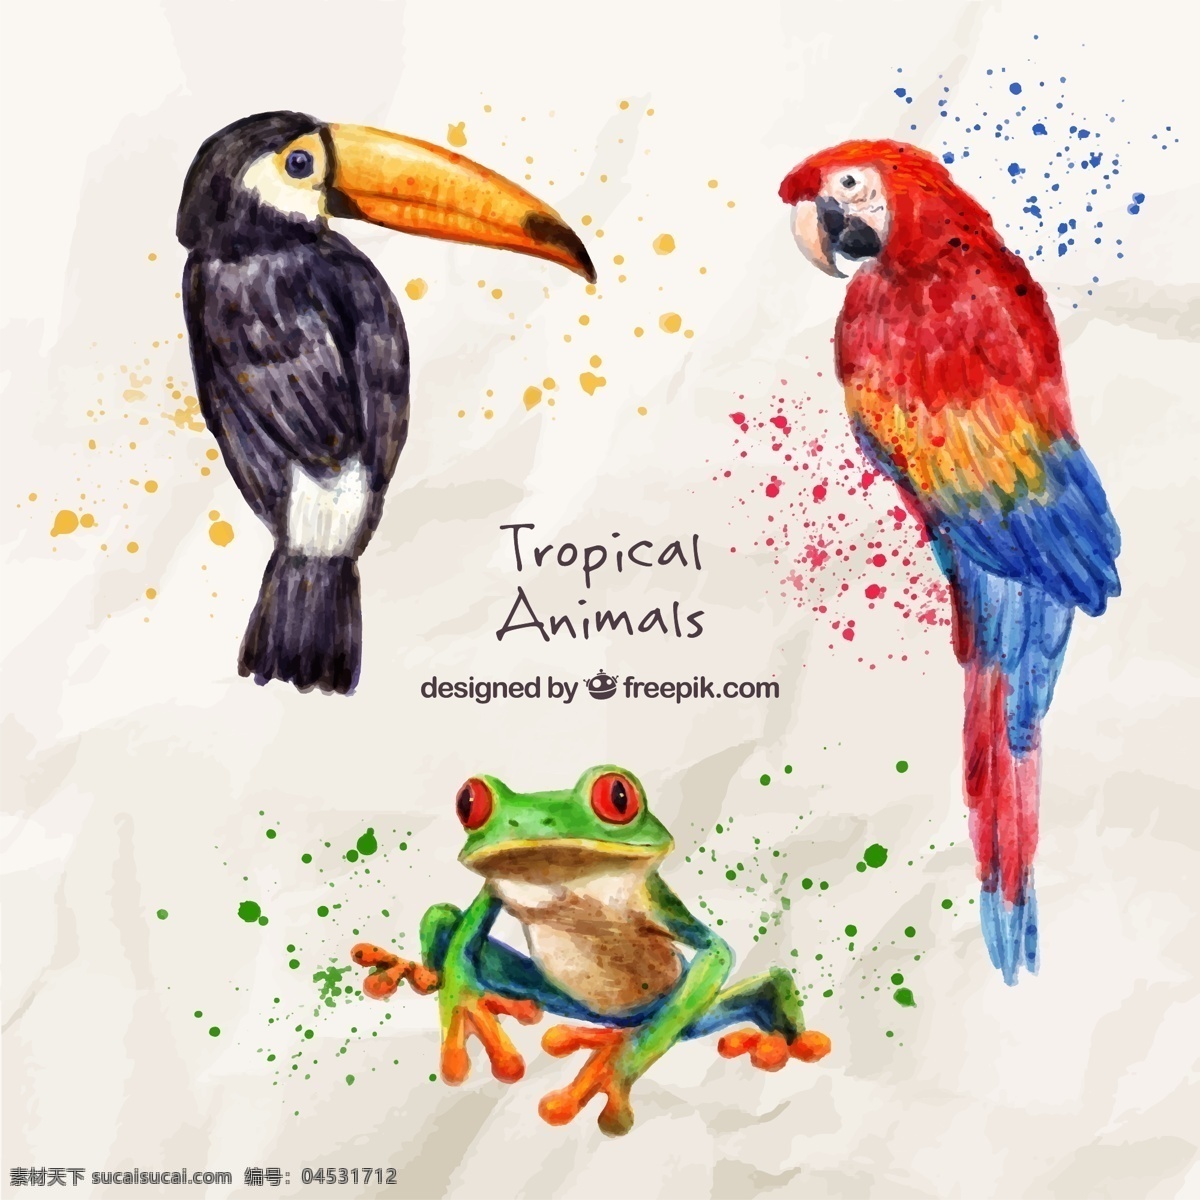 水彩 珍奇 鸟类 只 青蛙 手 鸟 自然 动物 翅膀 羽毛 丛林 热带 动物园 鹦鹉 艺术 飞溅 画 巨嘴鸟